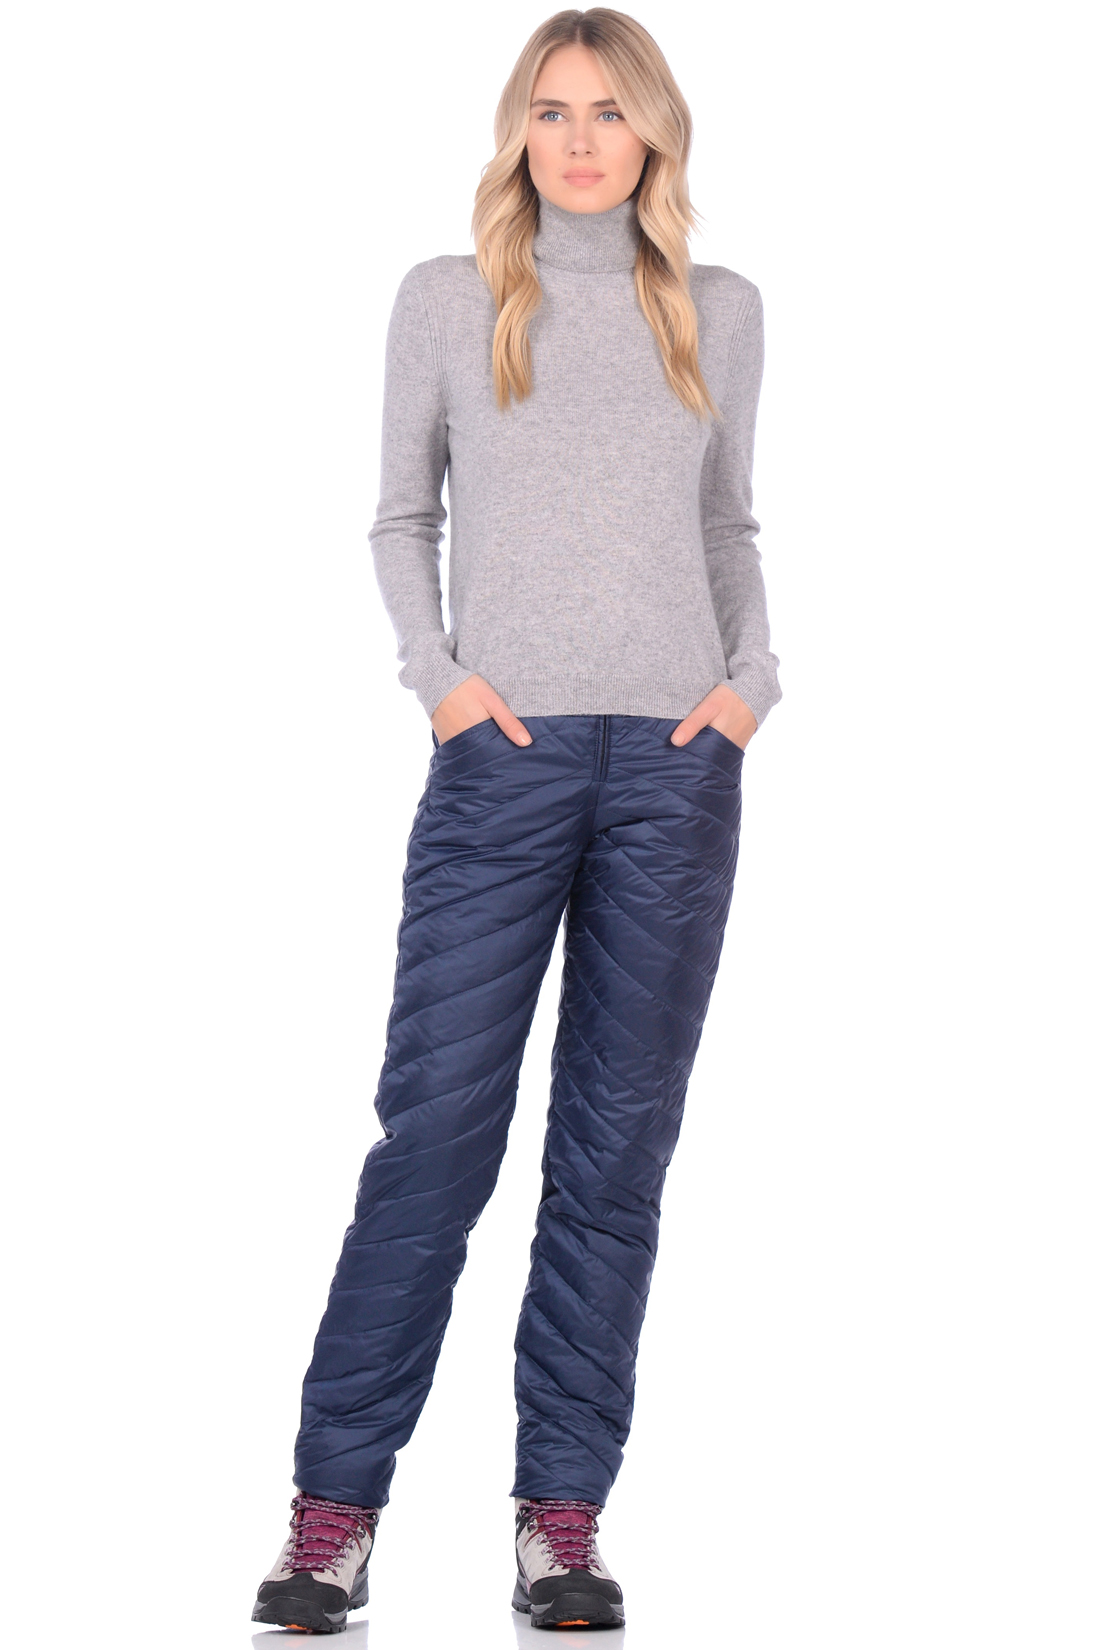 Утеплённые брюки на пуху (арт. baon B299550), размер S, цвет синий Утеплённые брюки на пуху (арт. baon B299550) - фото 3